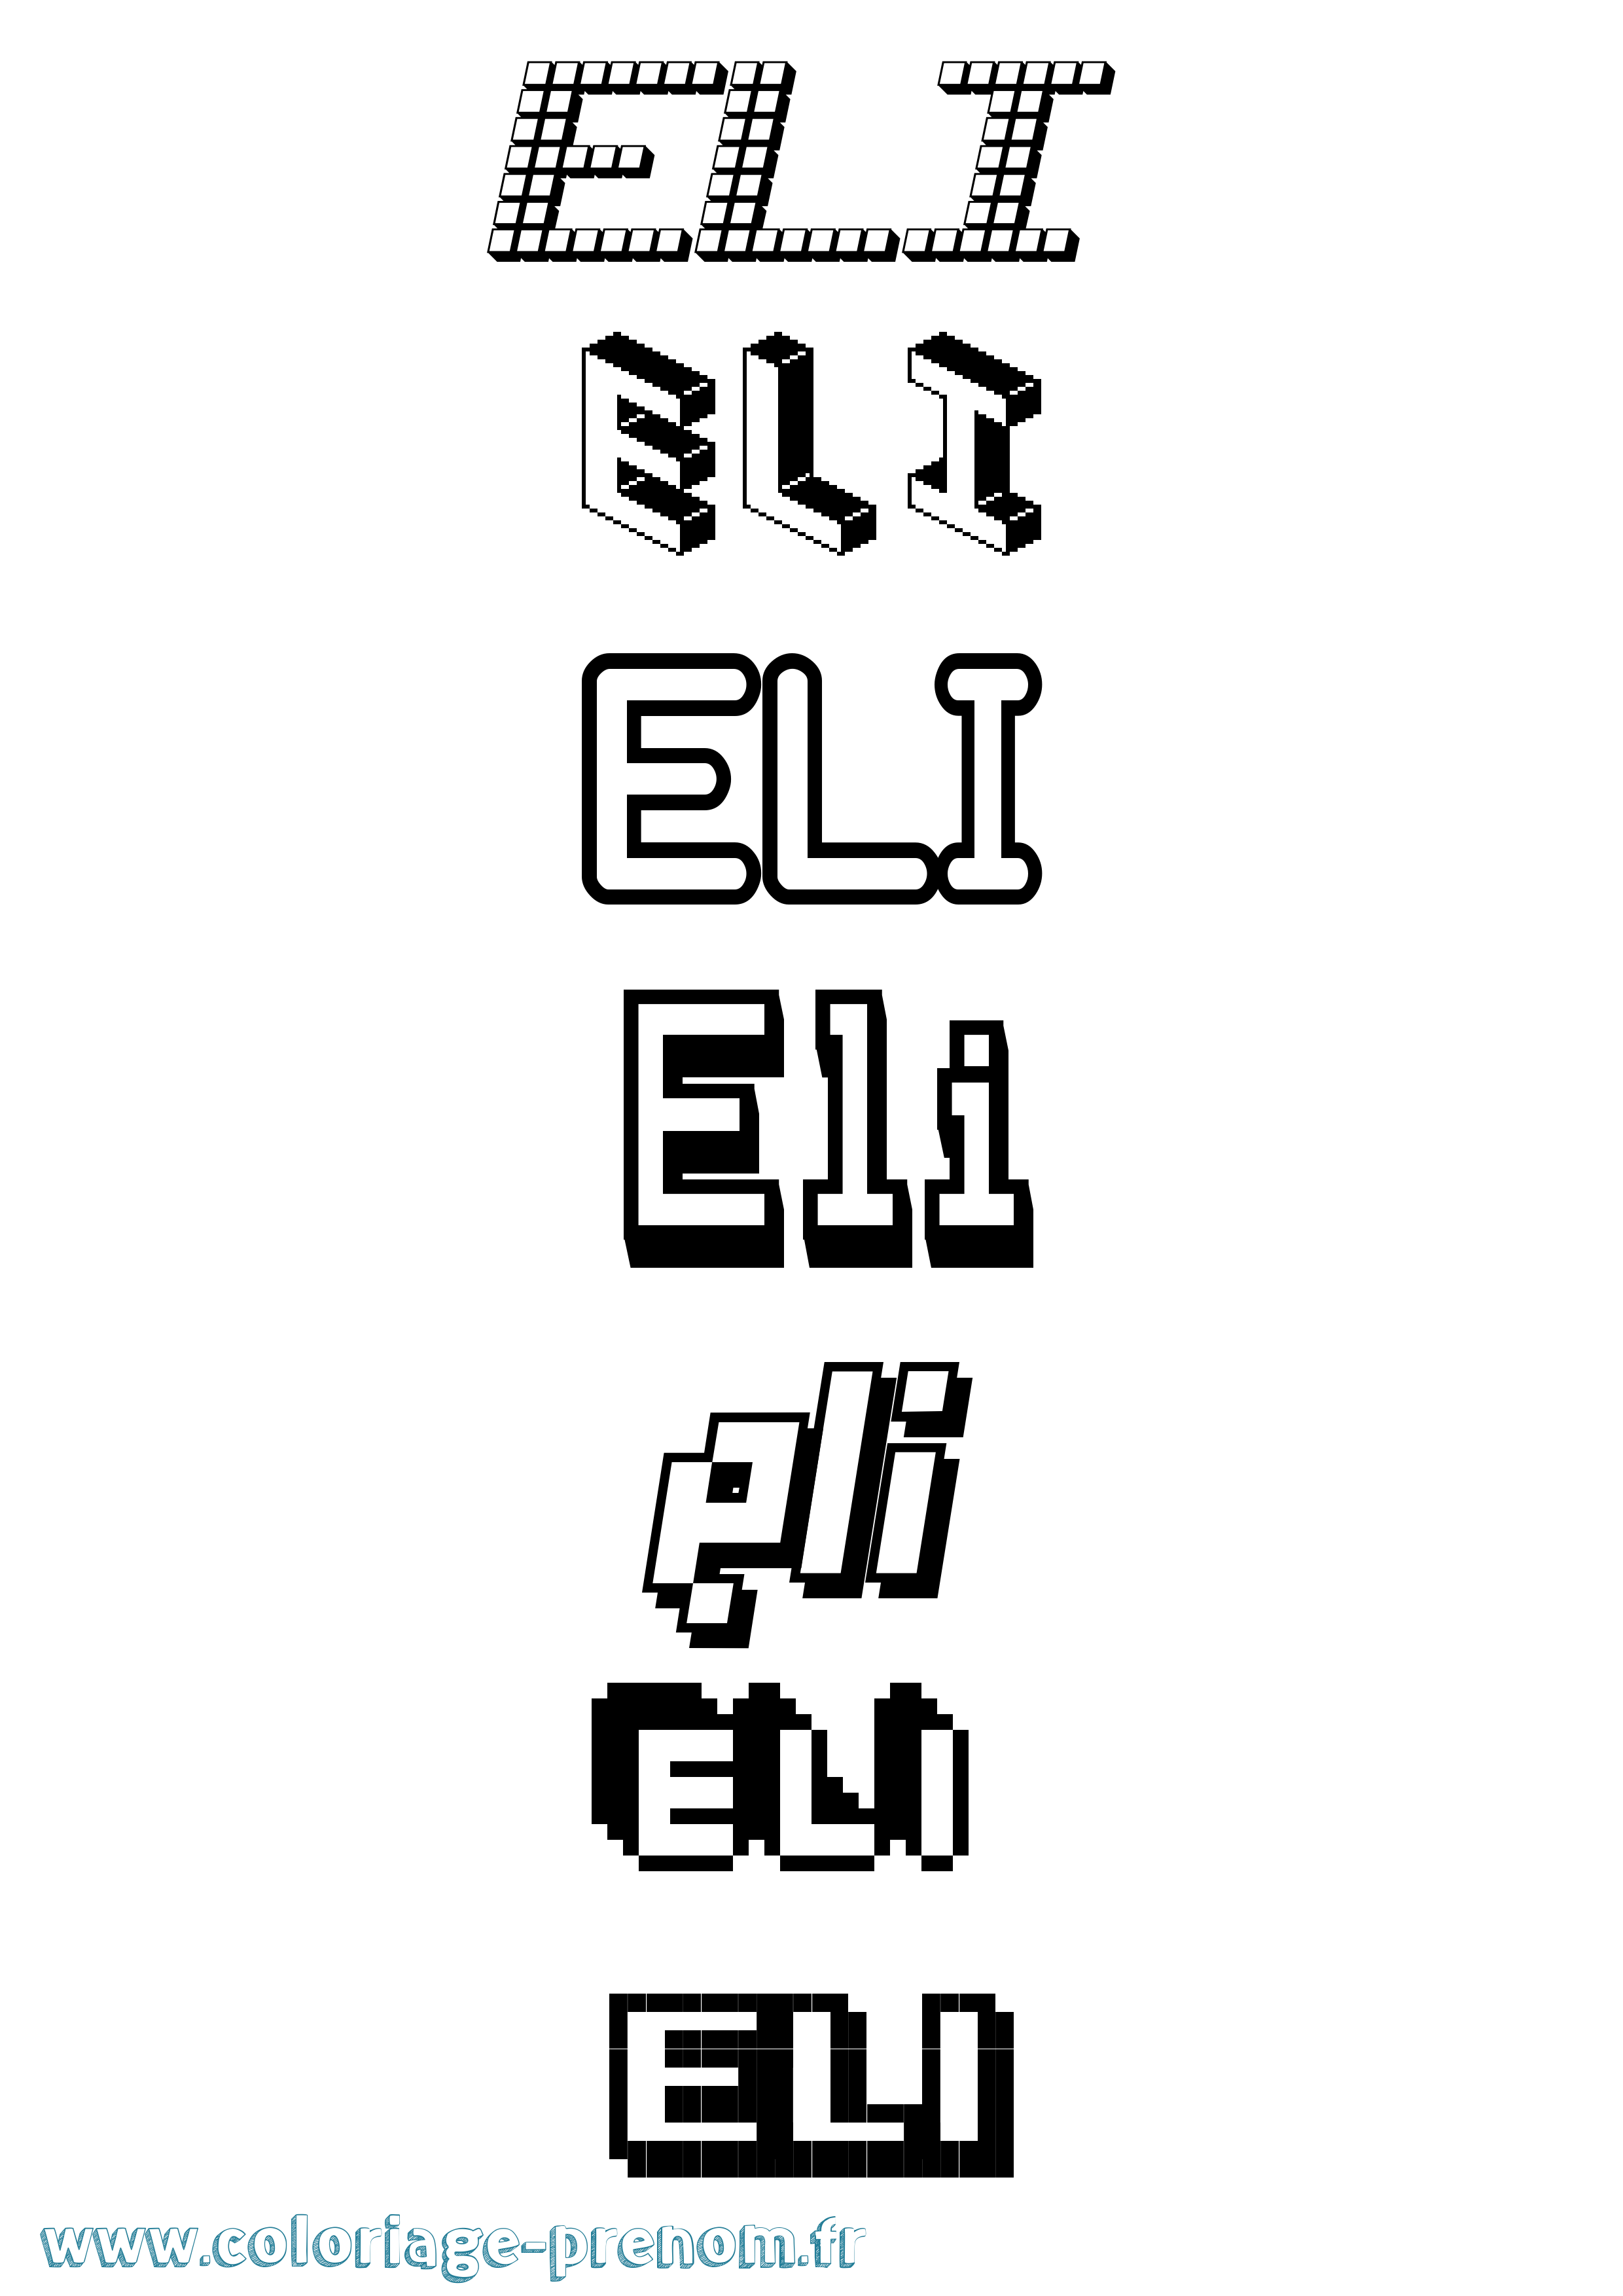 Coloriage prénom Eli Pixel